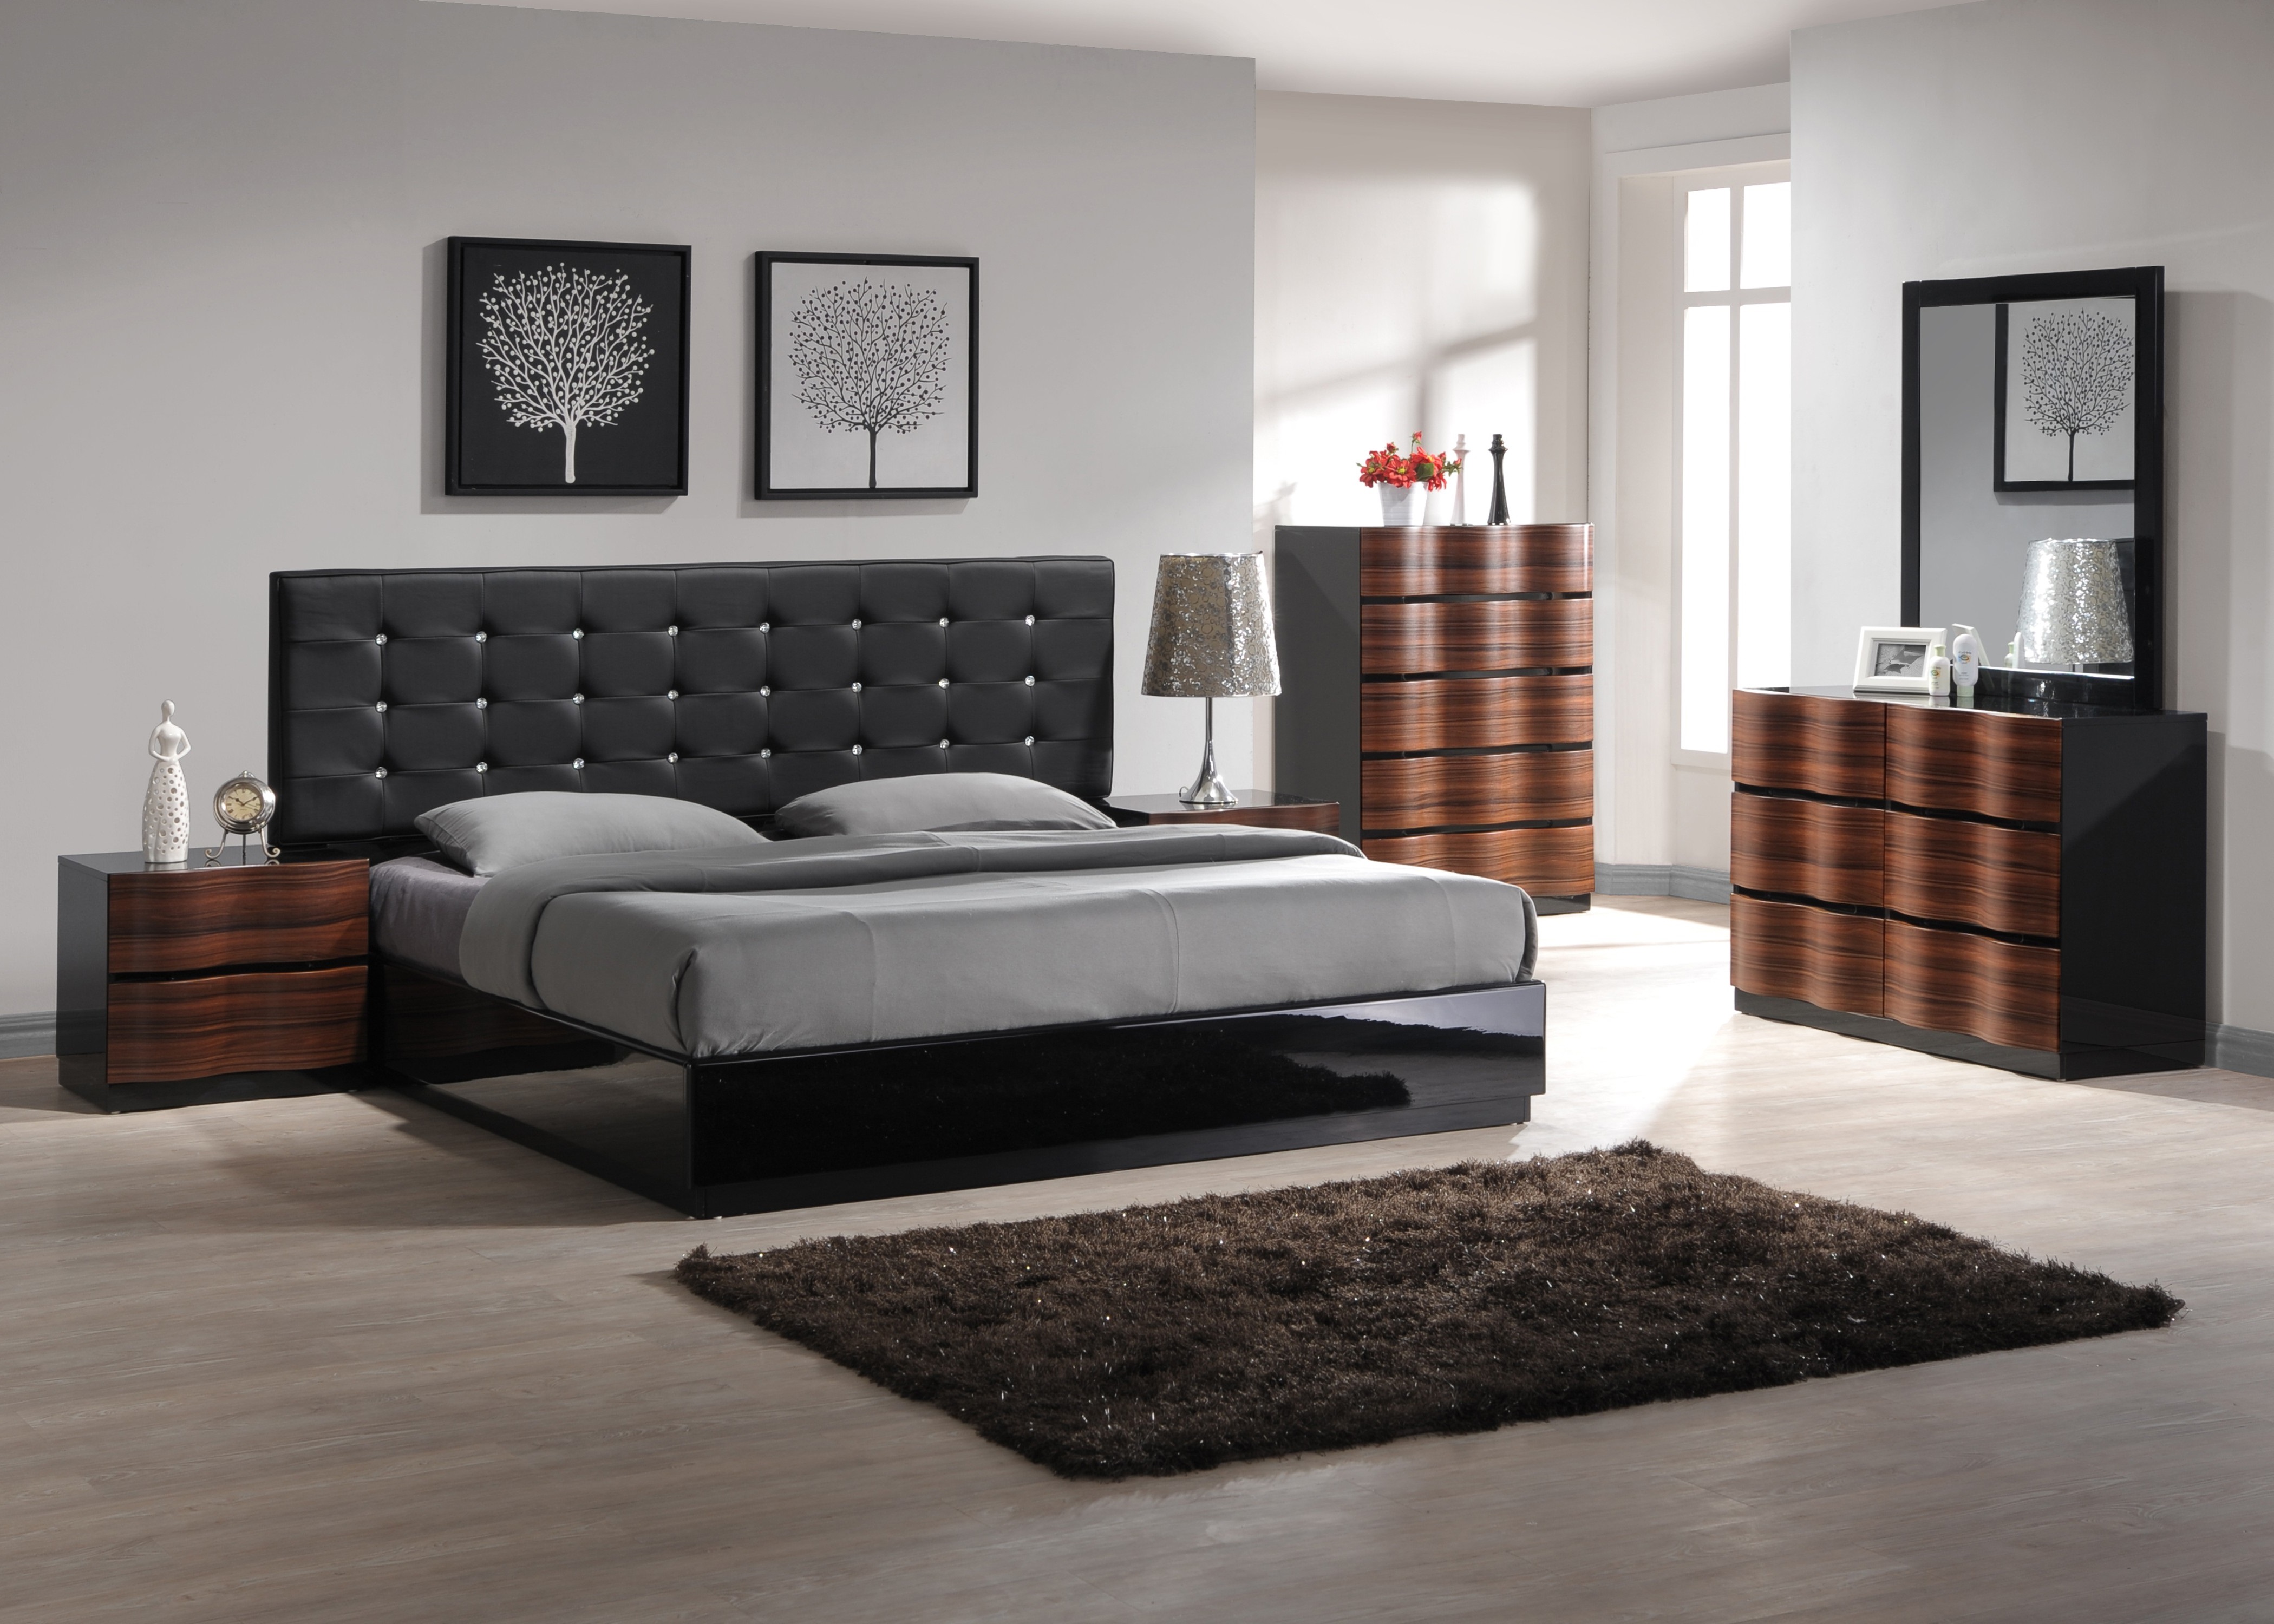 Рейтинг производителей кроватей. Ashley Furniture кровать черная. Кровать Модерн - стиль. Кровать в интерьере спальни. Спальня в стиле Модерн.